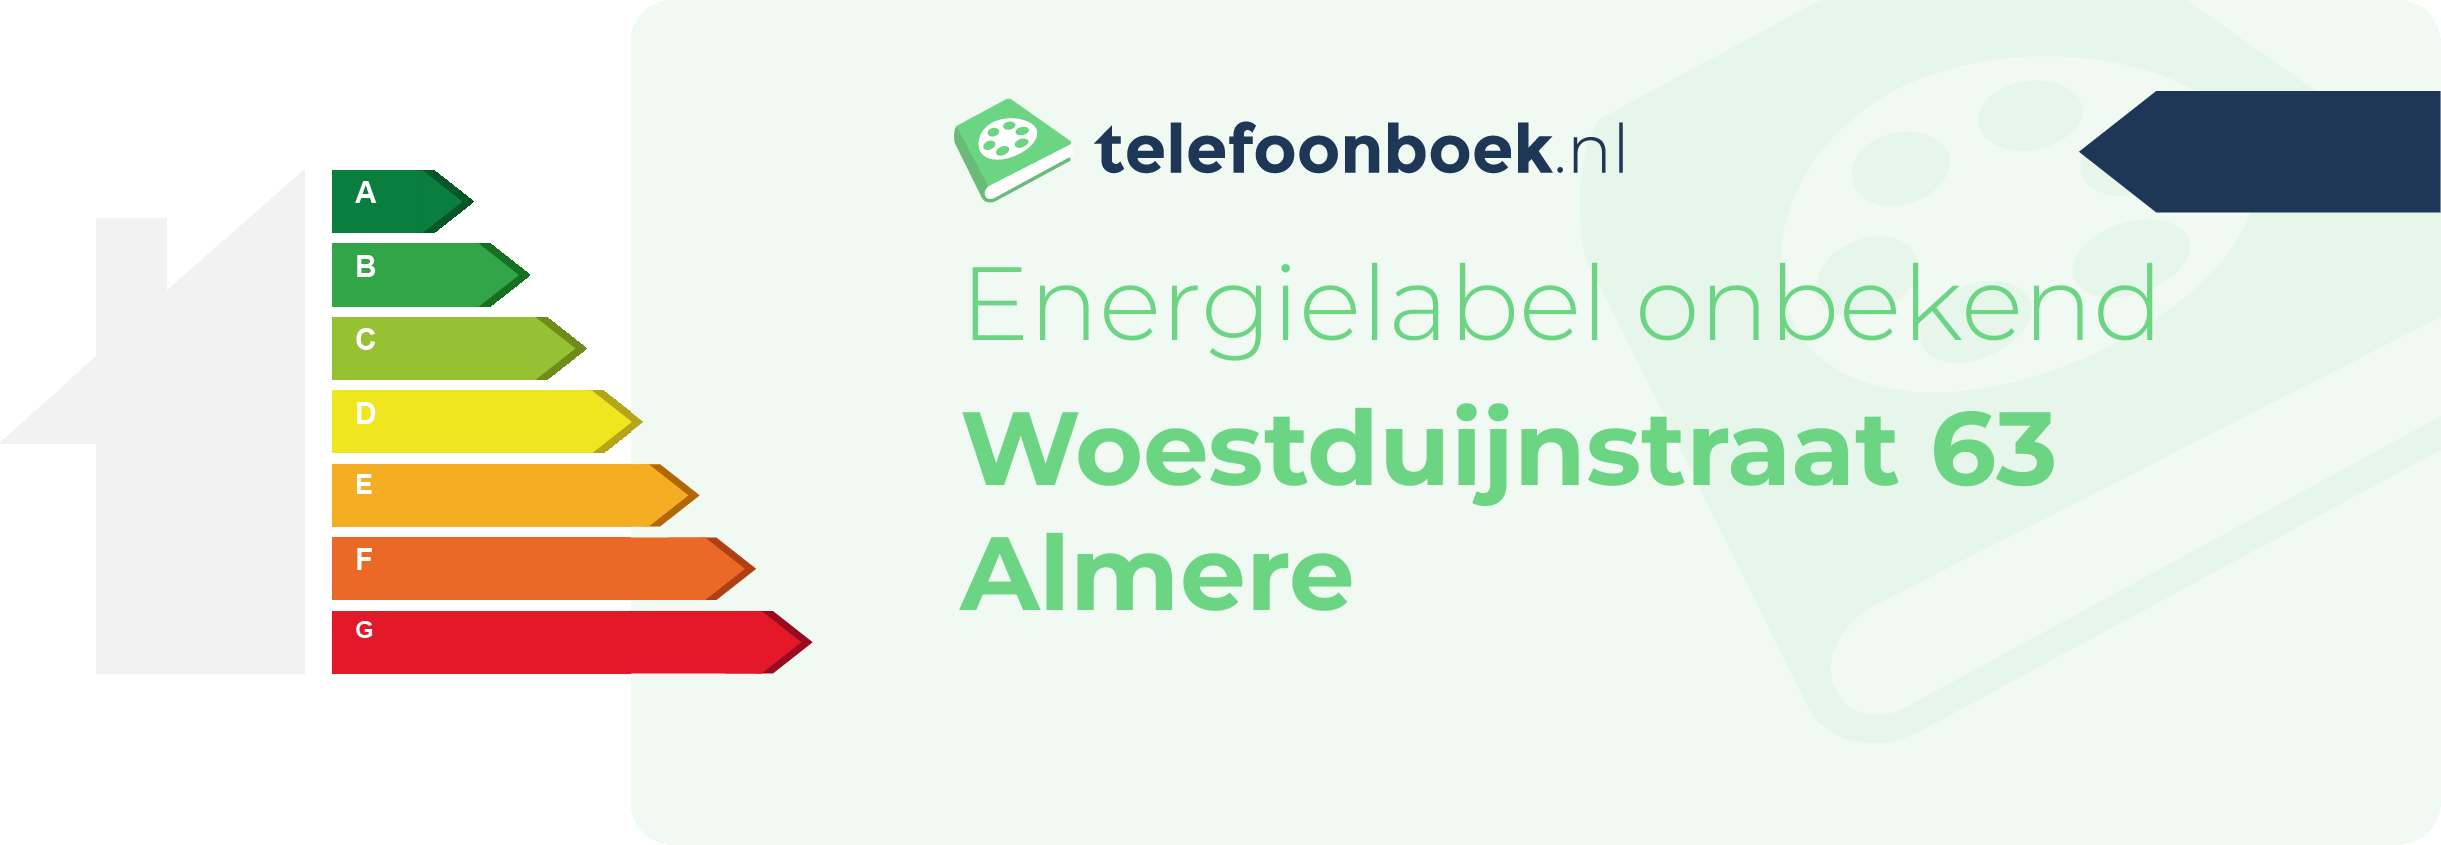 Energielabel Woestduijnstraat 63 Almere